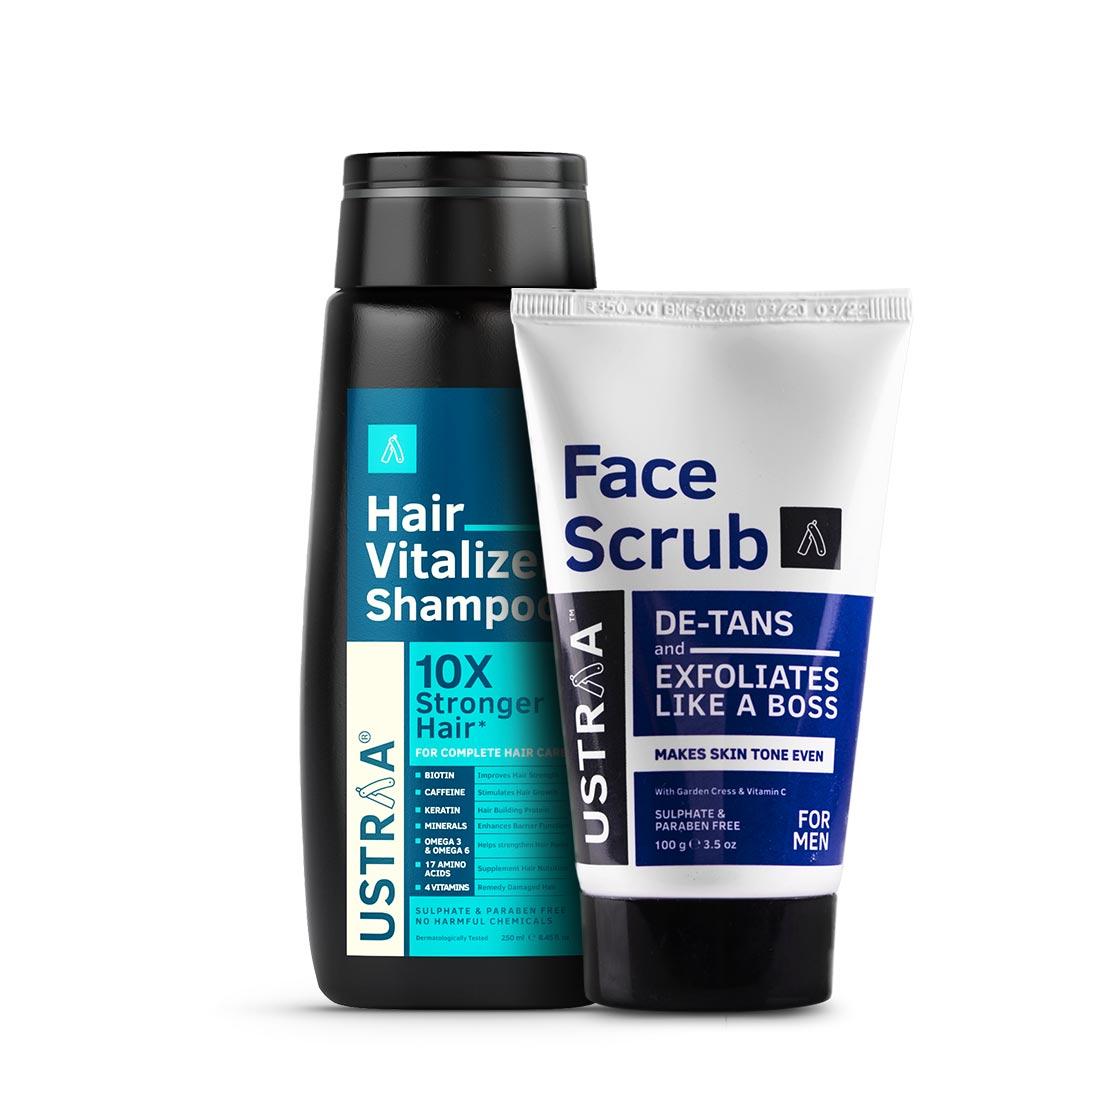 Hair Vitalizer Shampoo & De Tan Face Scrub